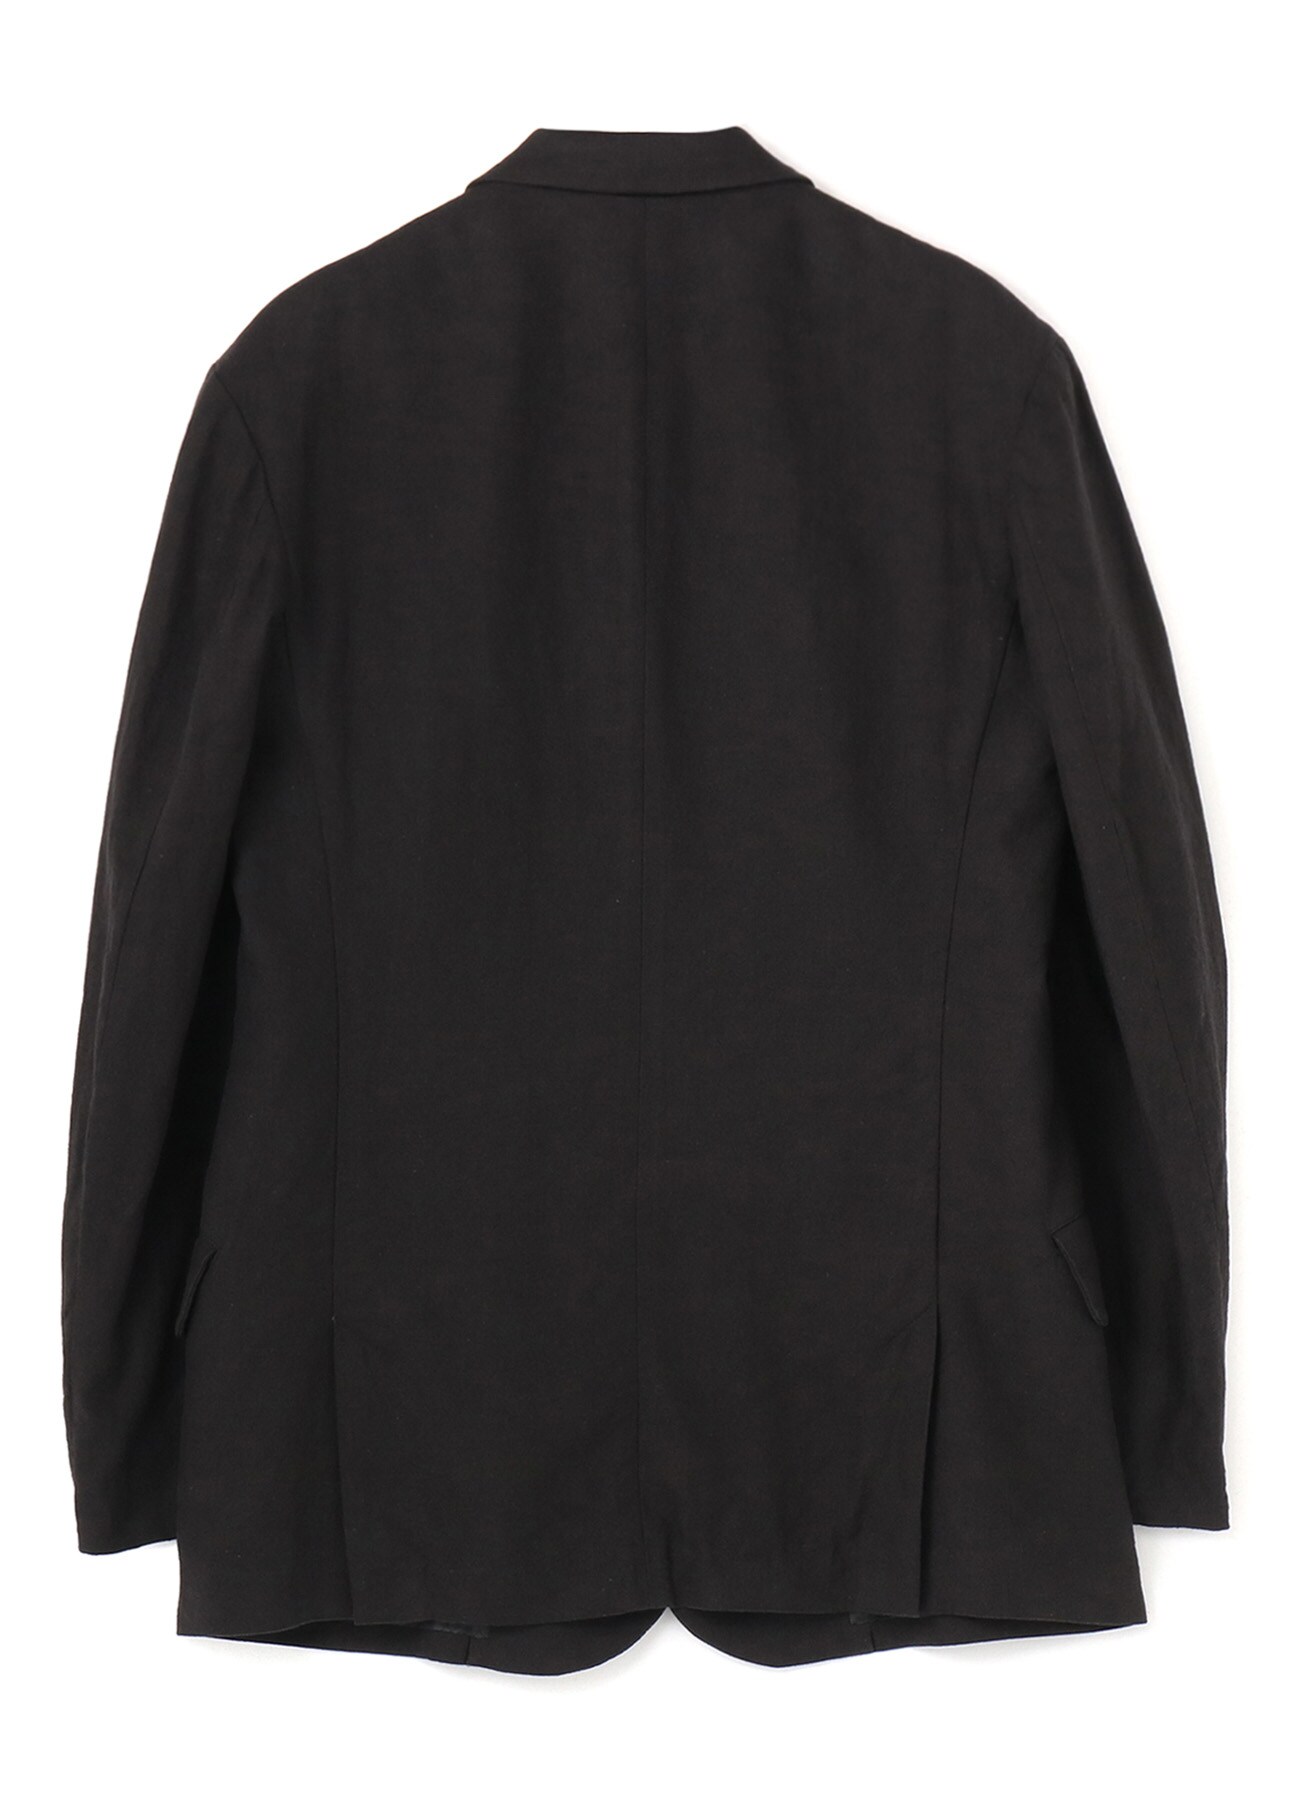 Li/C Washer Twill Indian Arabesque Pattern Layer 2BS Slim Jacket